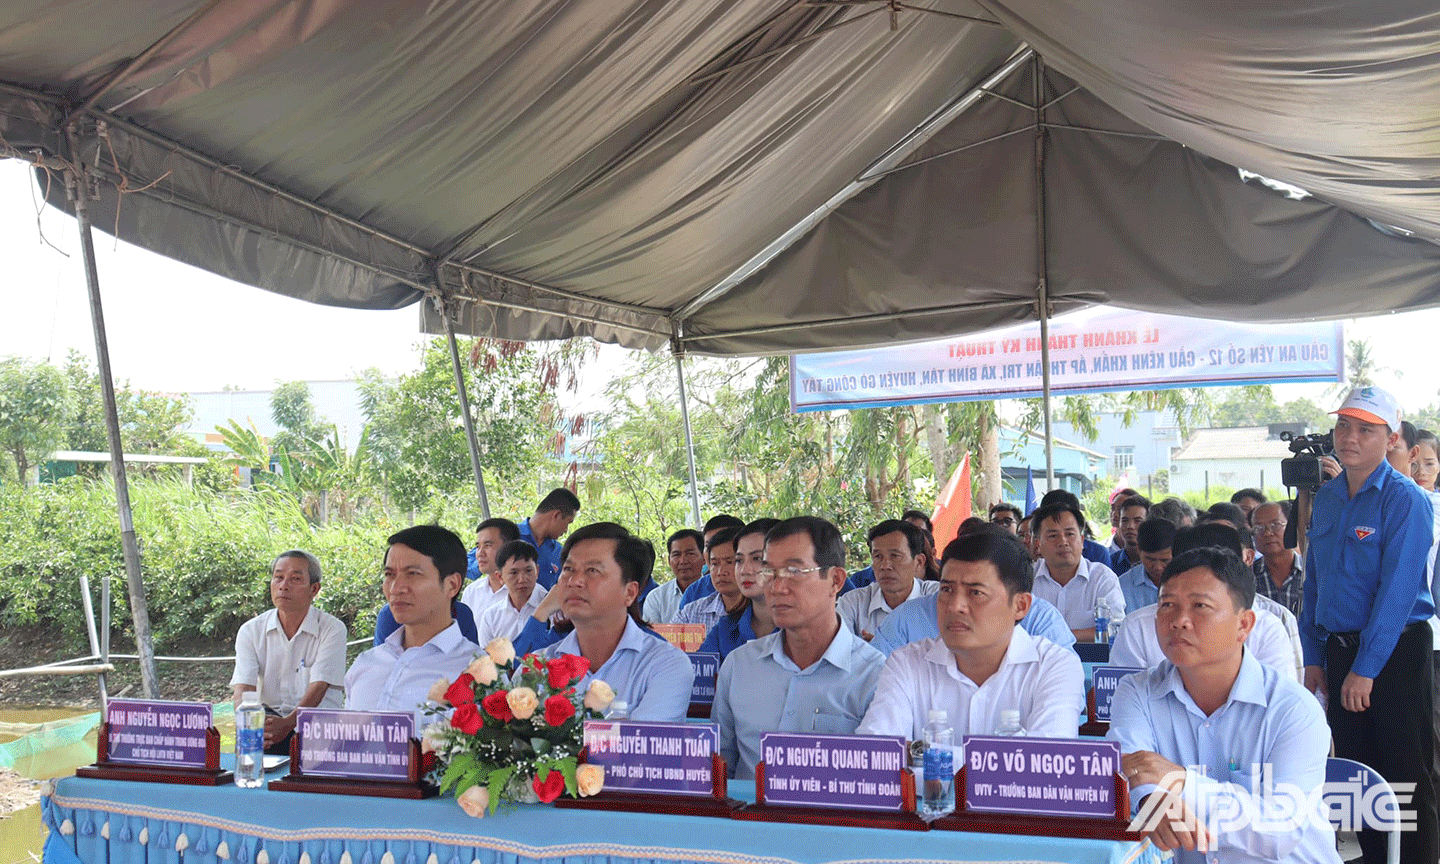 Đại biểu tham dự buổi lễ Lễ Khánh thành cầu An Yên số 12 - Cầu Kênh Khẩn (tại ấp Thuận Trị, xã Bình Tân, huyện Gò Công Tây). 